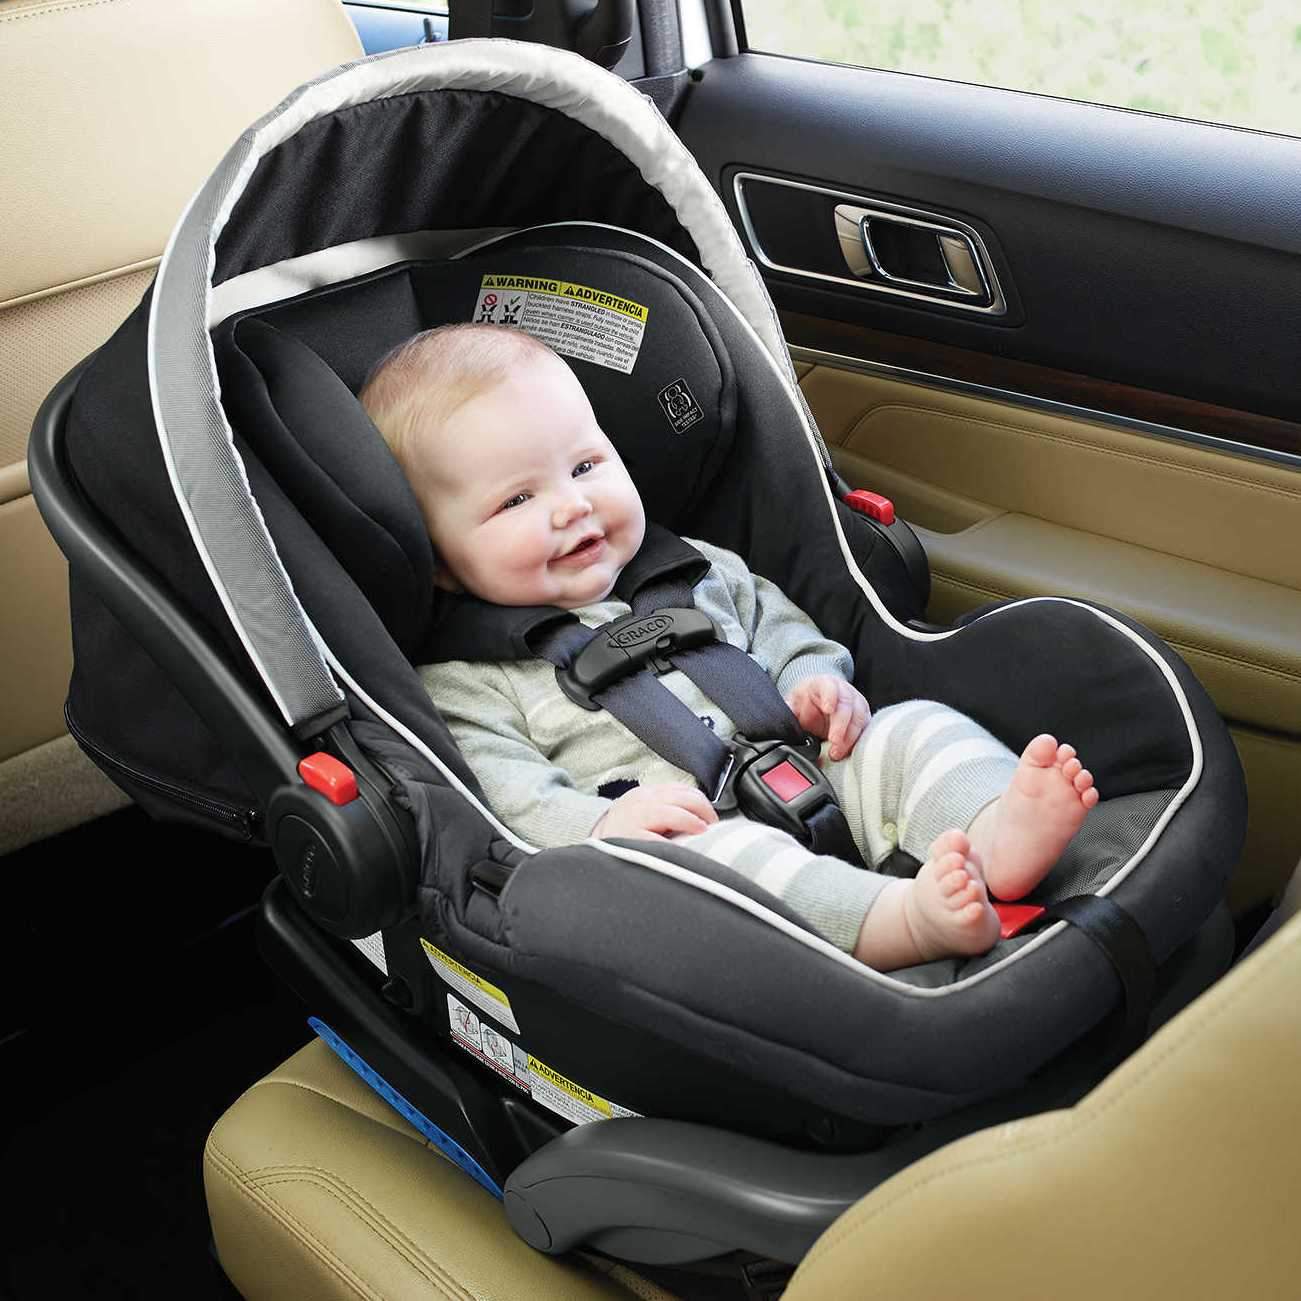 5ï¸? Best Car Seats For 1 Year Old Baby ðð¶ððºð